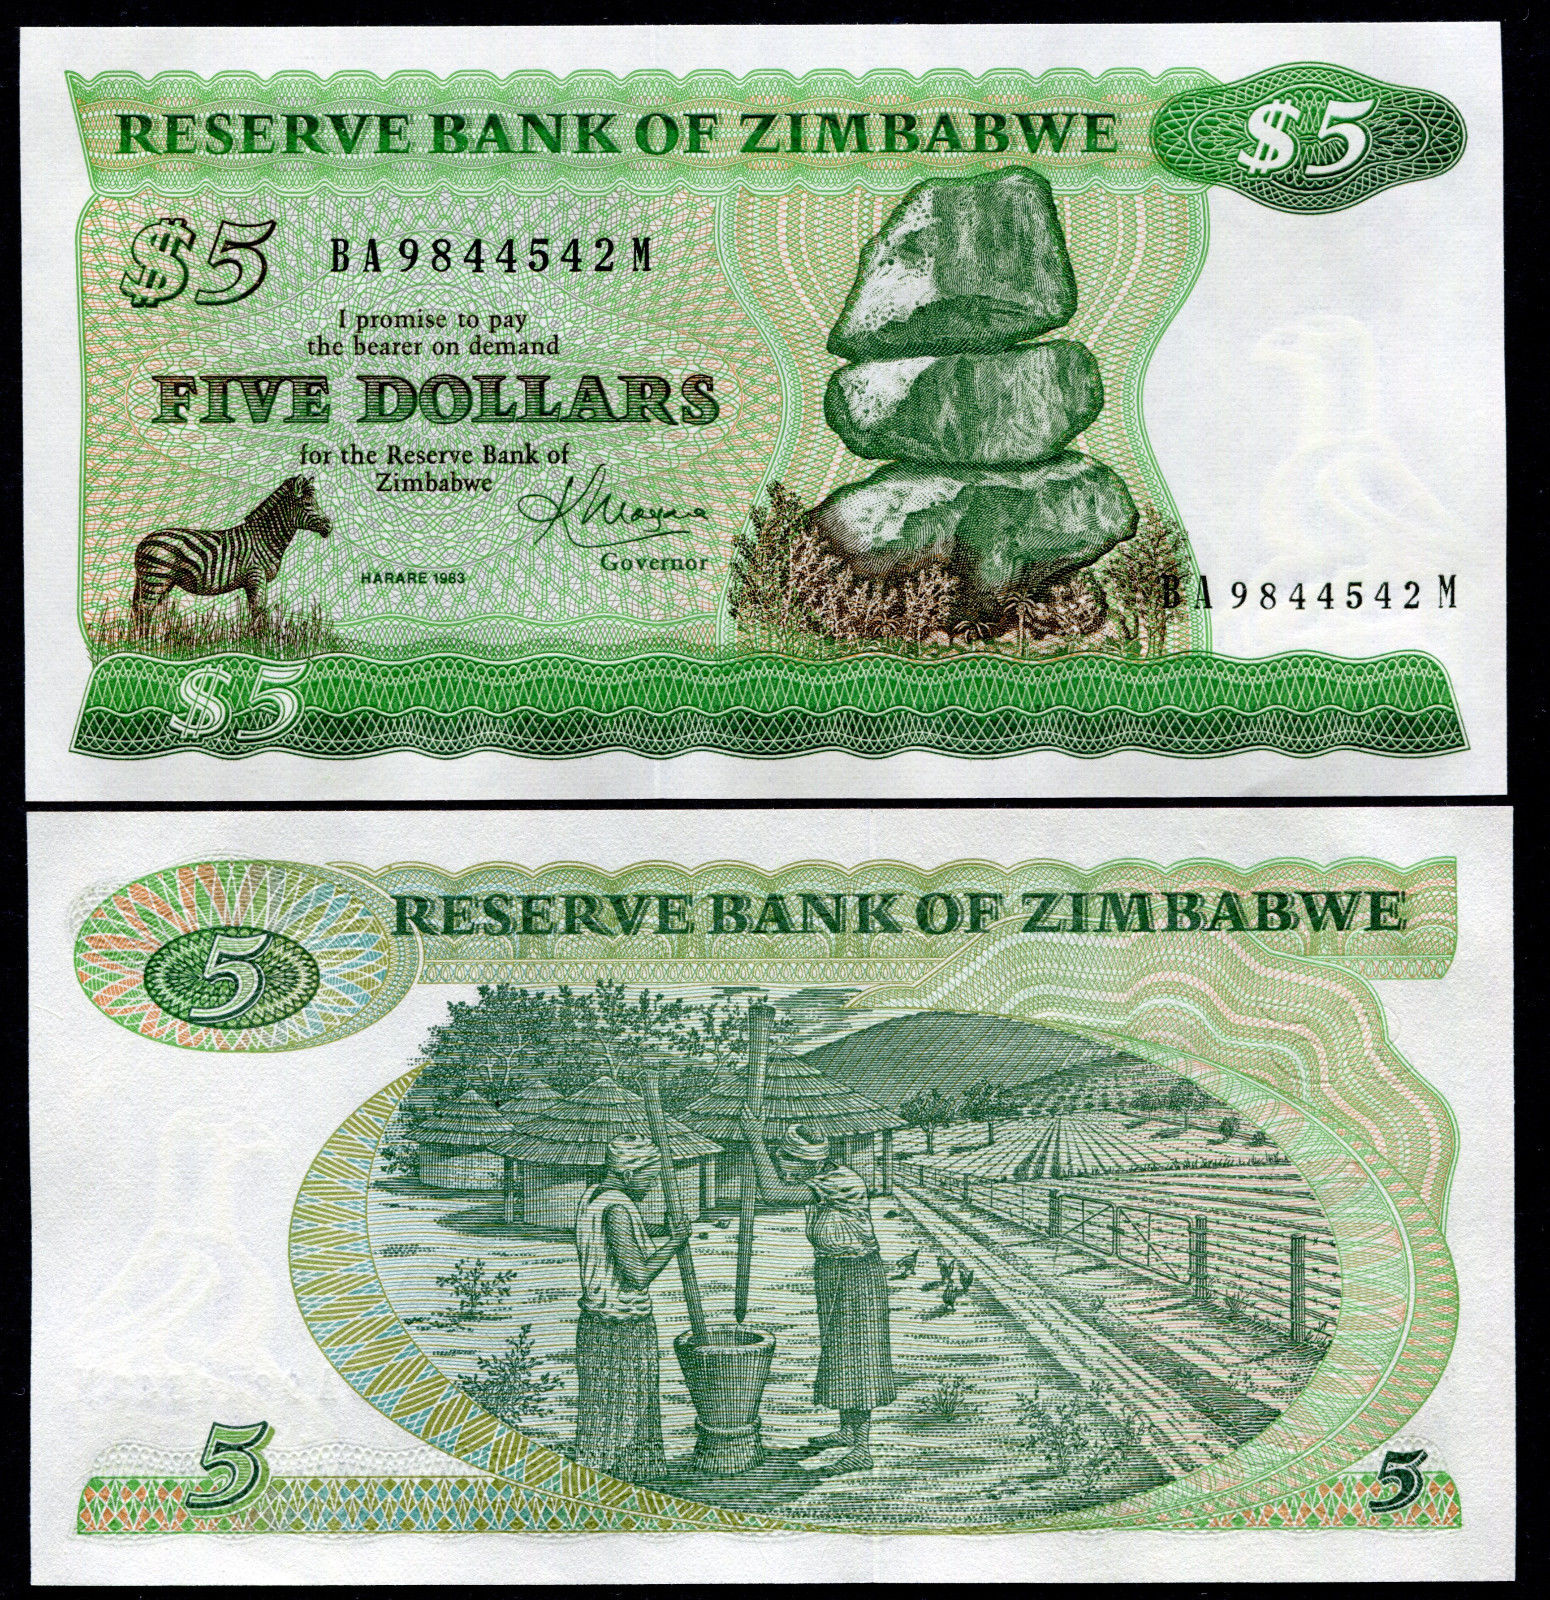 5 dollars Zimbabwe 1983